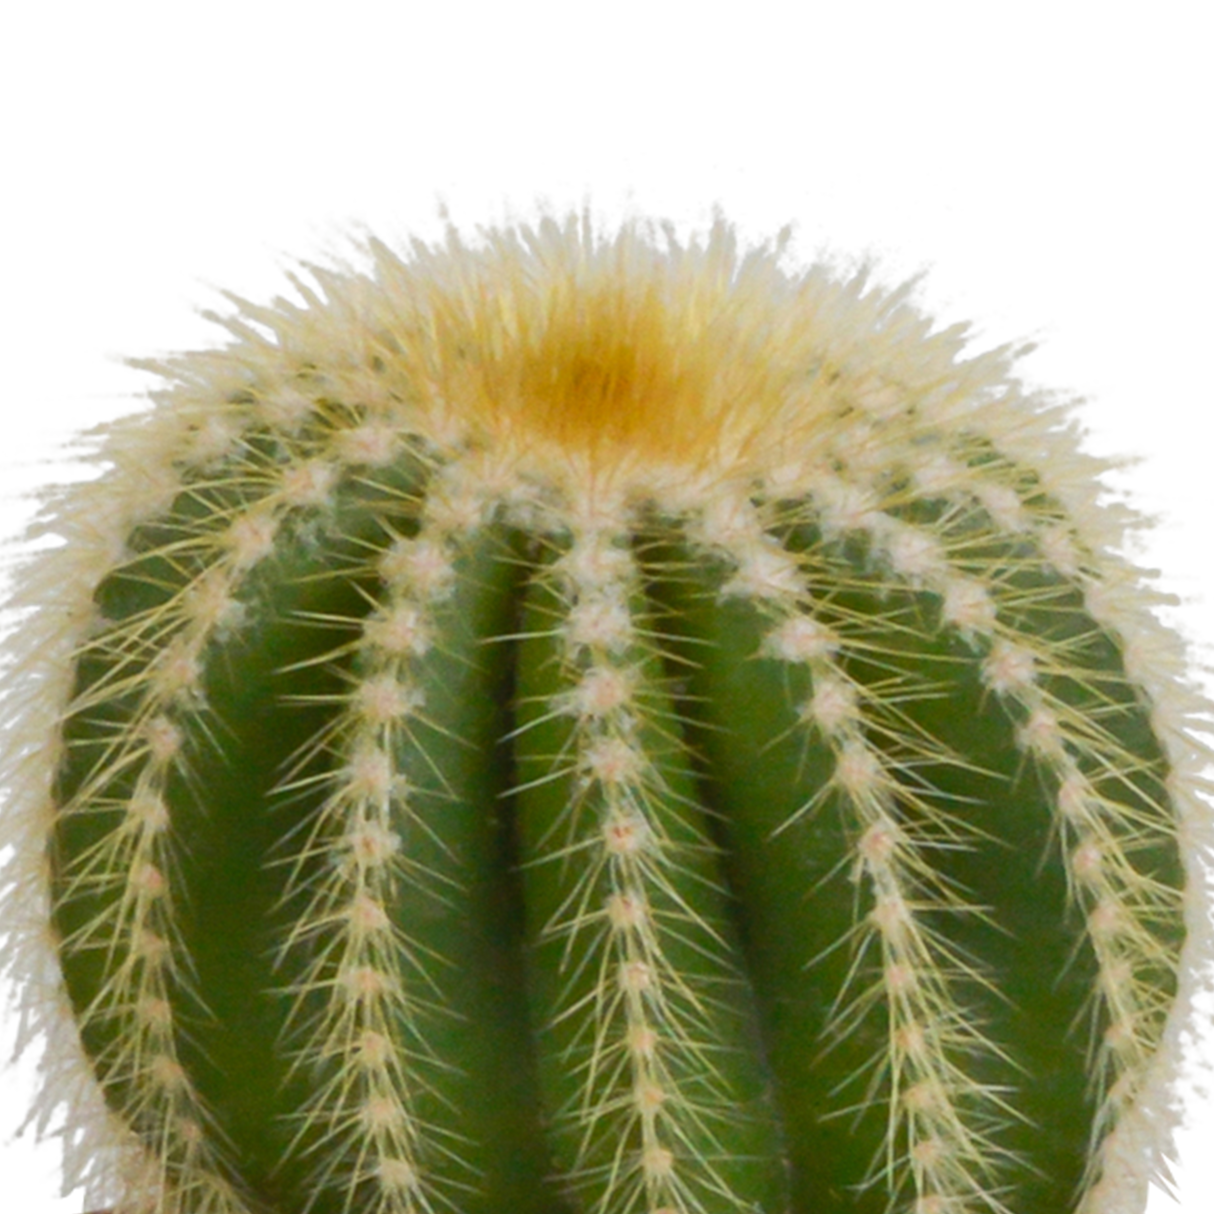 Kaktus-Geschenkbox und Terrakotta-Pflanzentöpfe – Set mit 3 Pflanzen, H18 cm